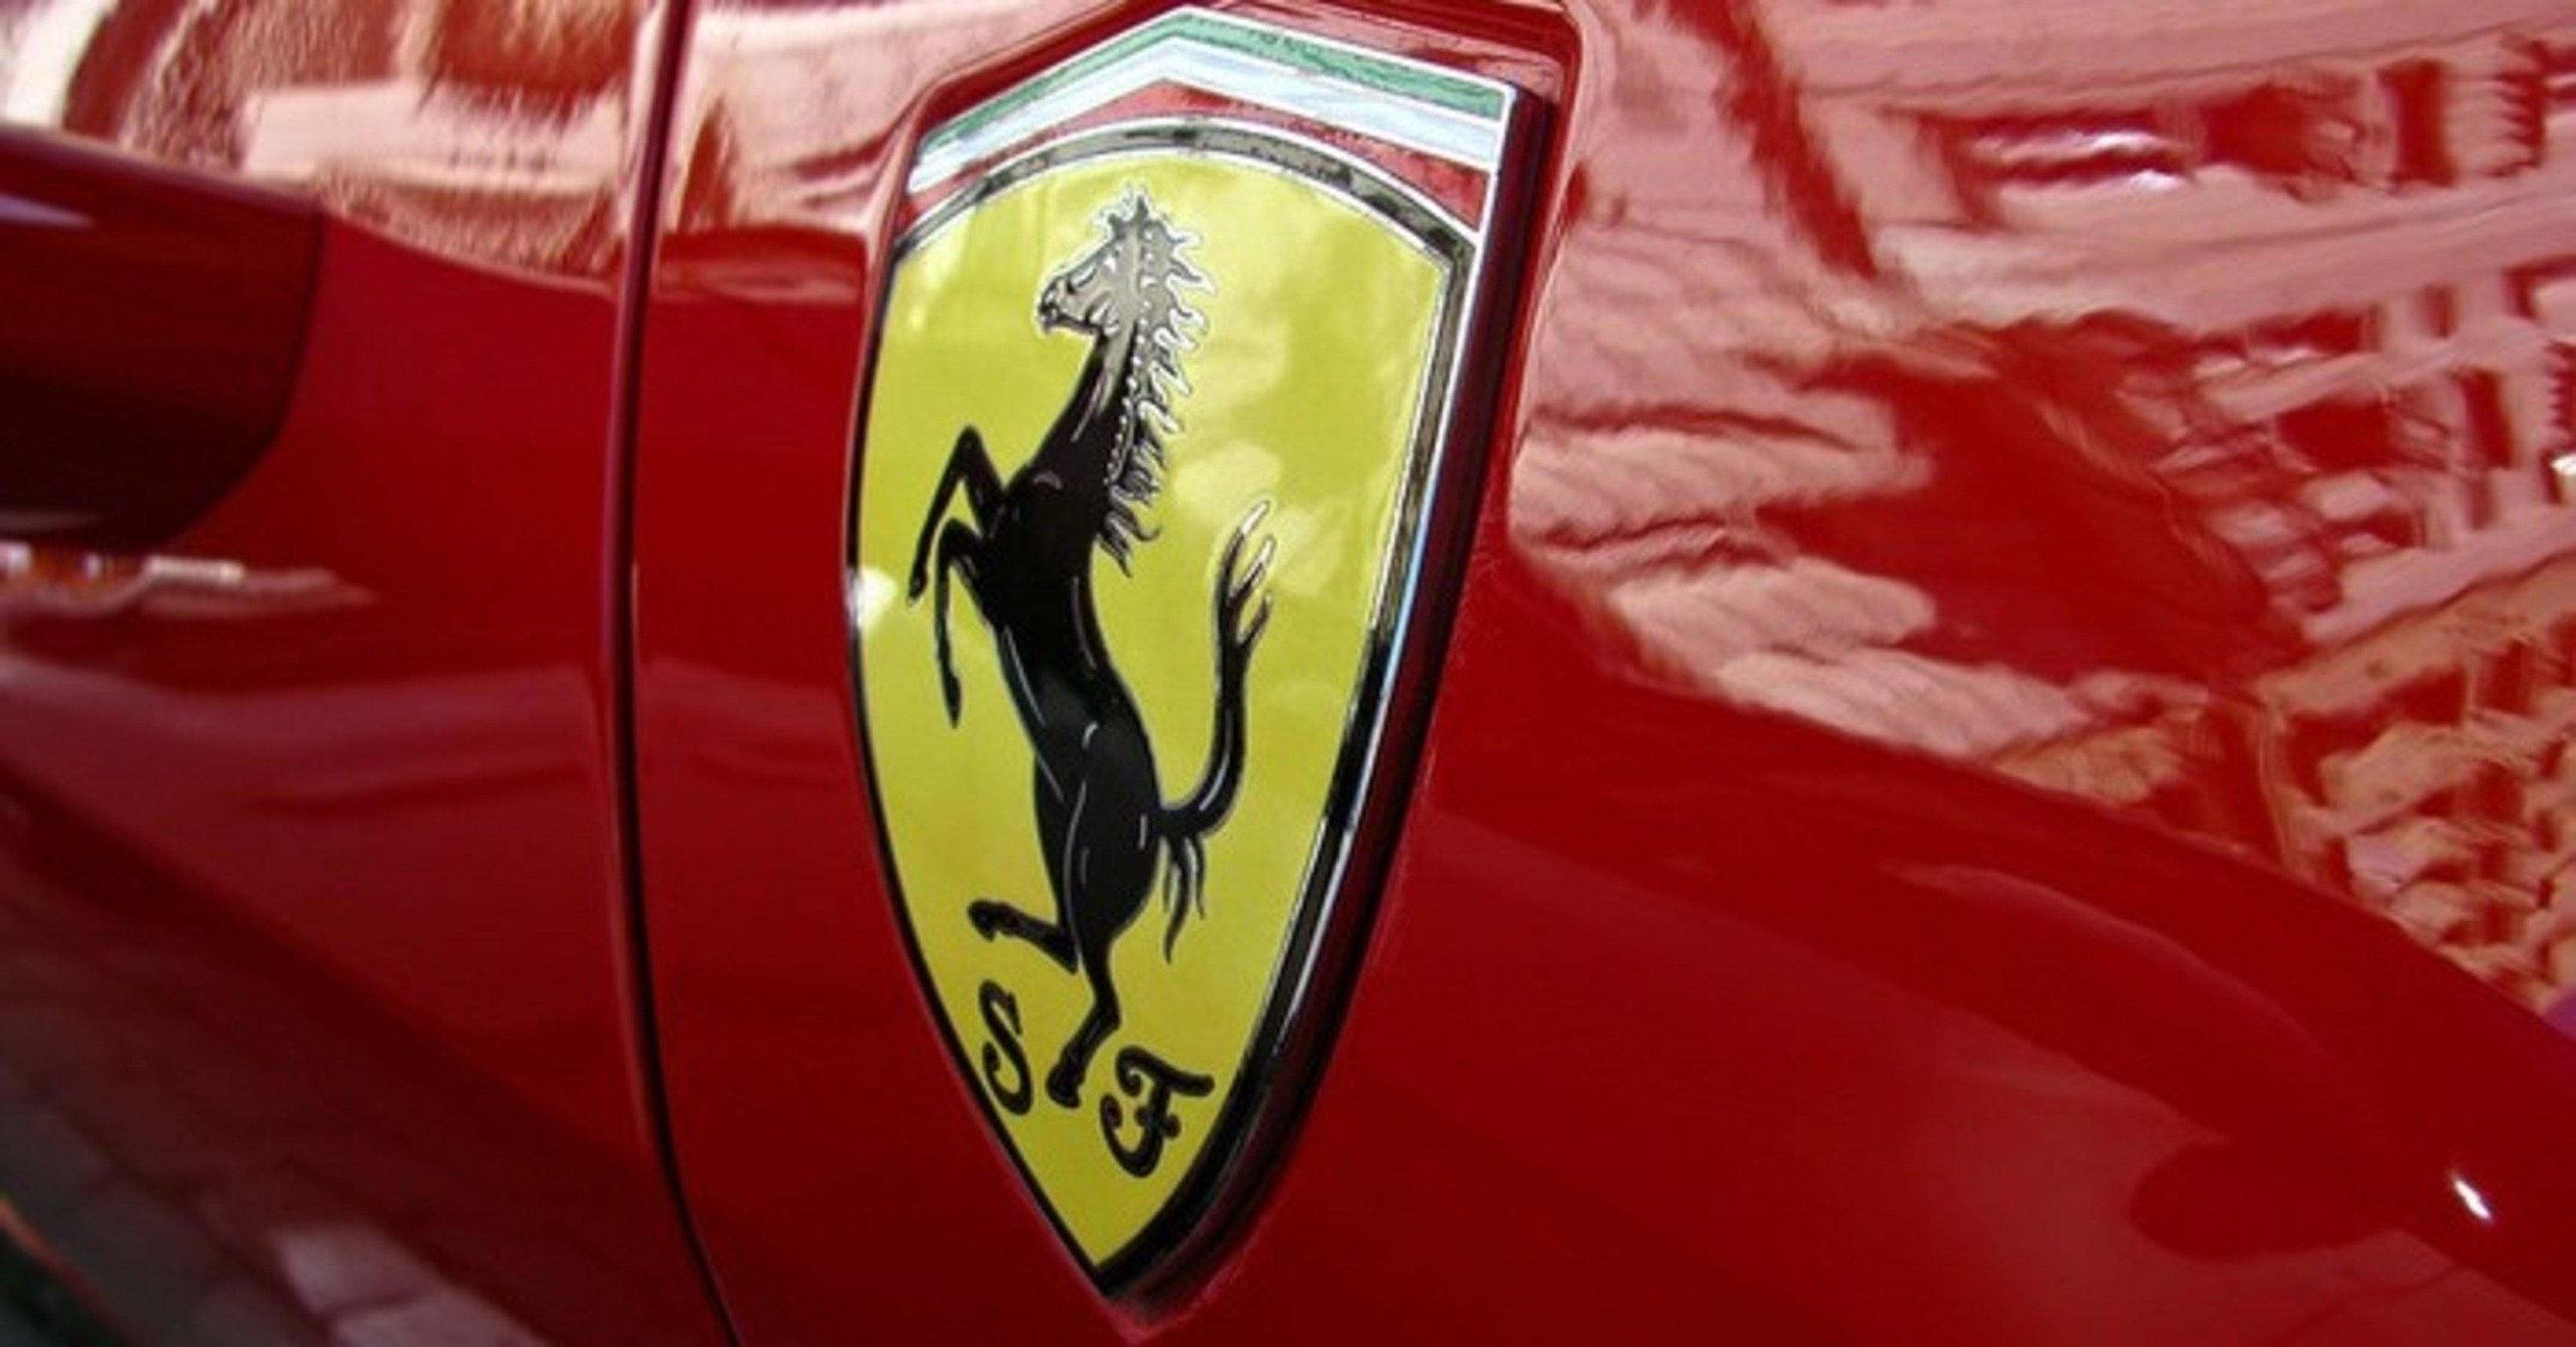 Ferrari Vs Elettrico, chi vincer&agrave;? [VIDEO]